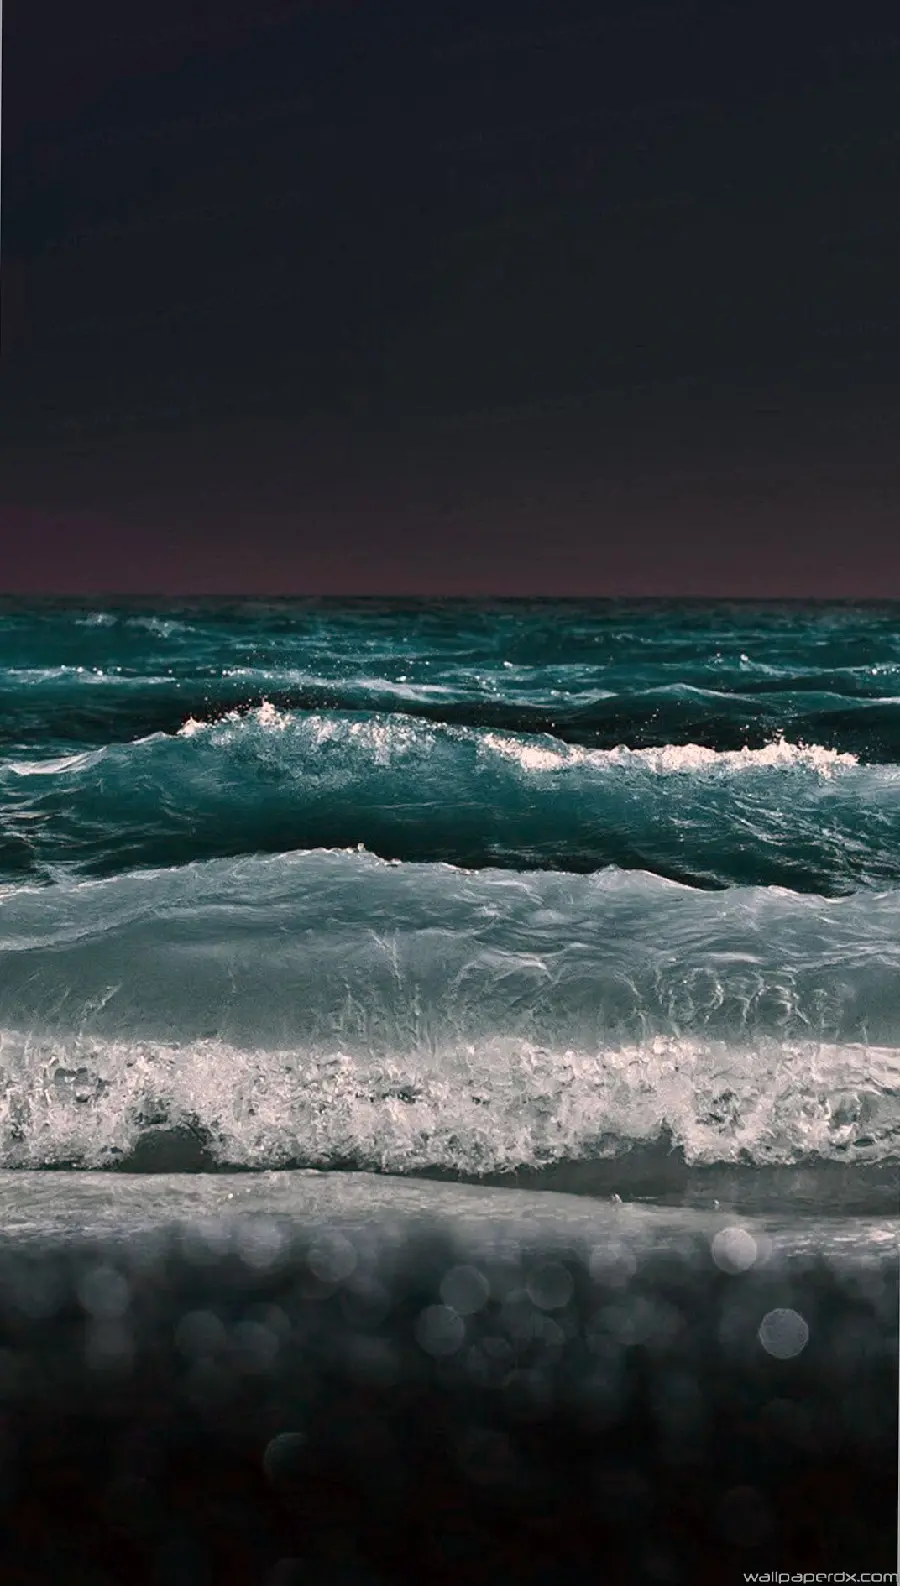 دانلود عکس امواج زلال دریا در شب و تاریکی با رنگ سبز آبی بسیار زیبا مناسب برای استوری و پست و والپیپر ویندوز